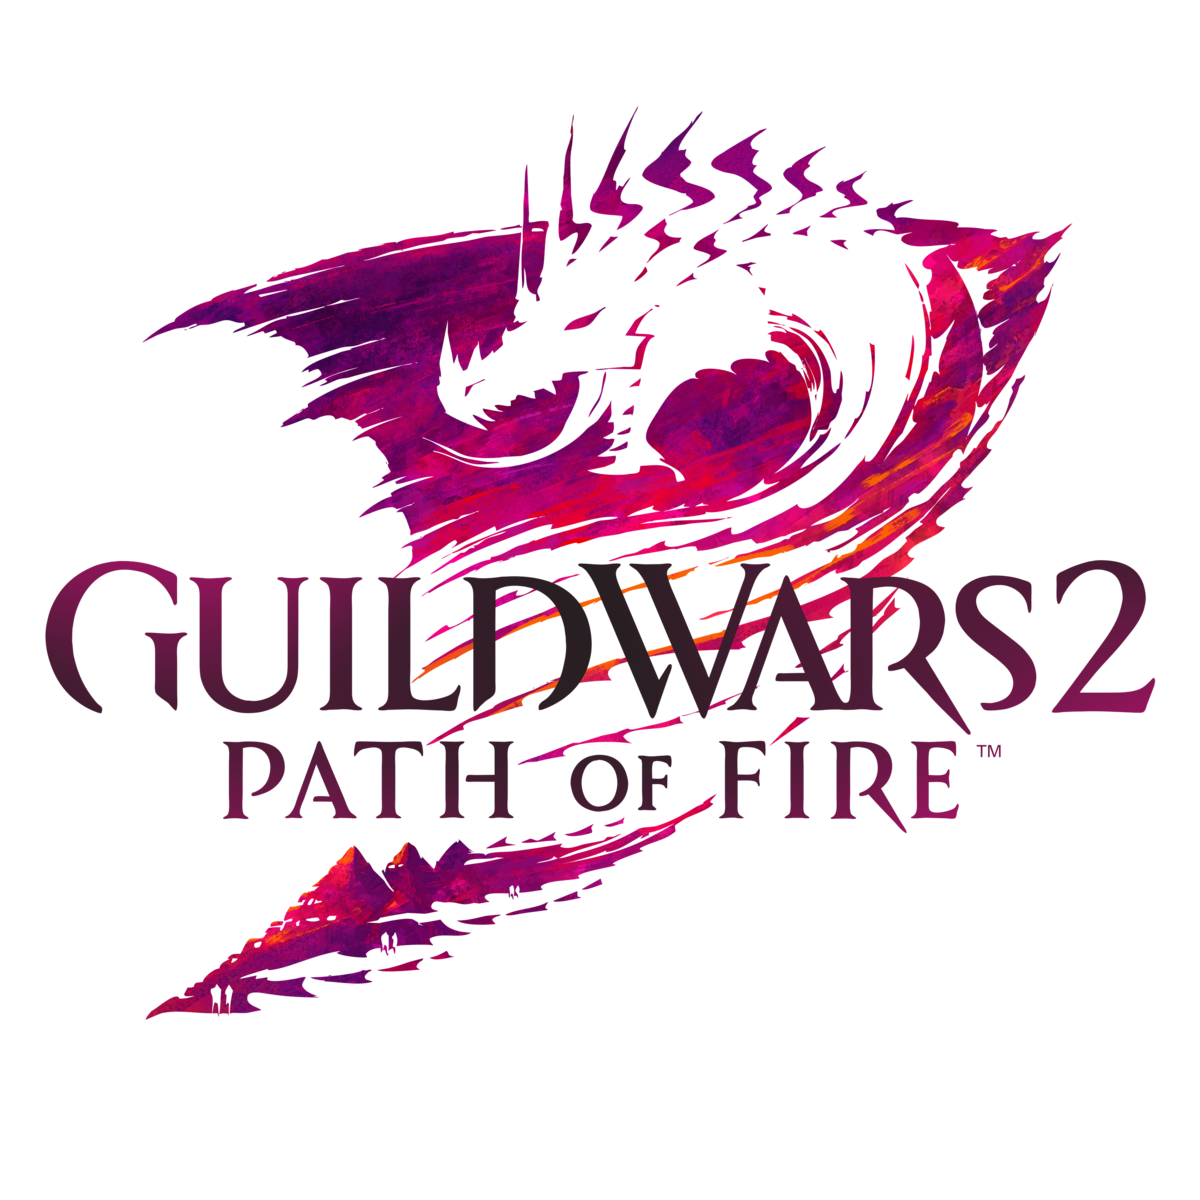 guild wars 2 logo transparent